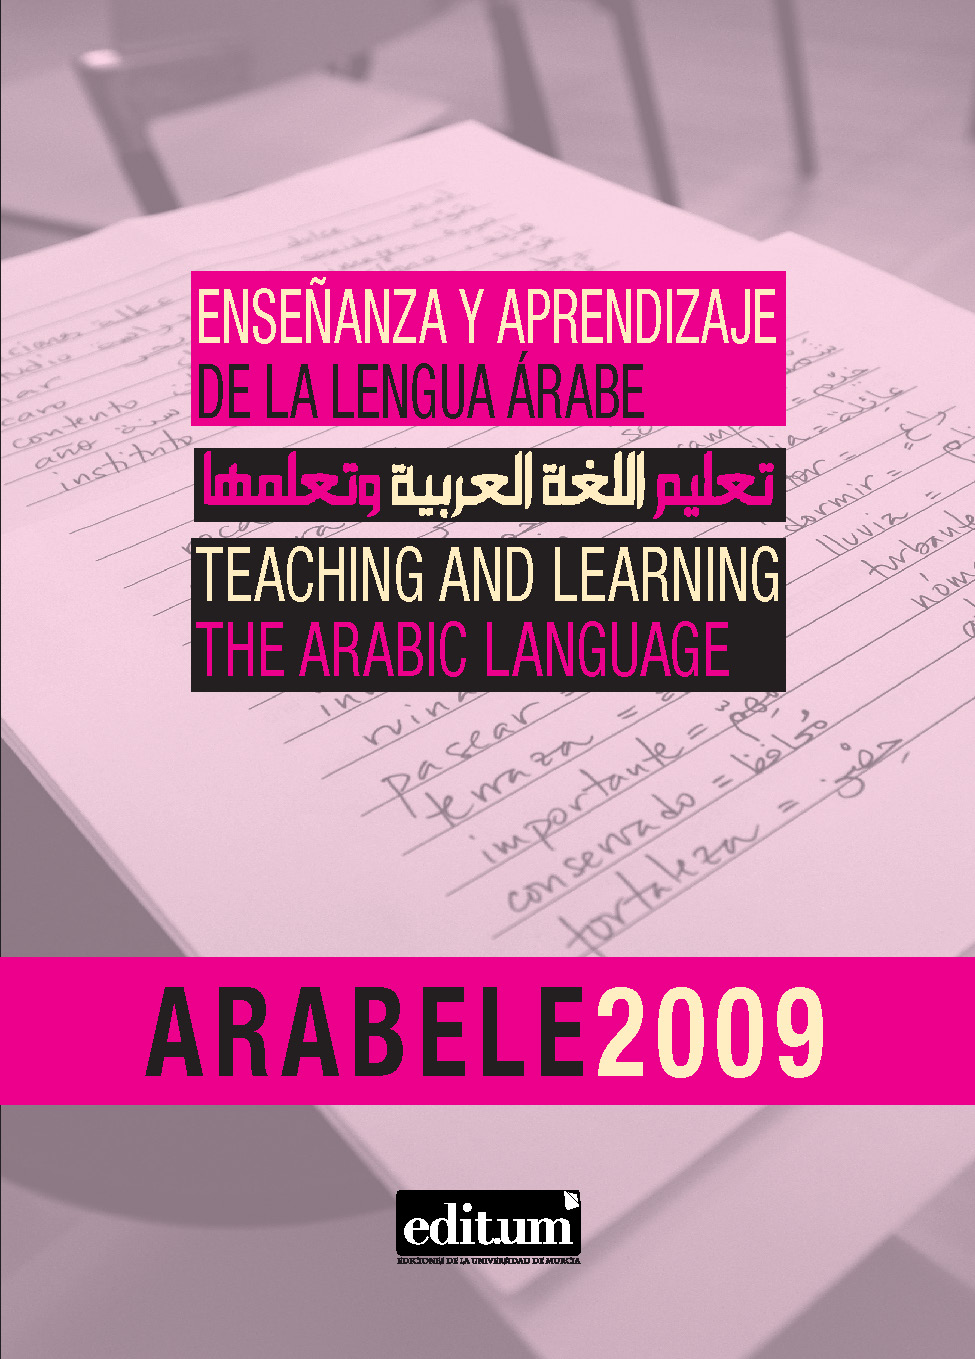 Imagen de portada del libro Arabele2009